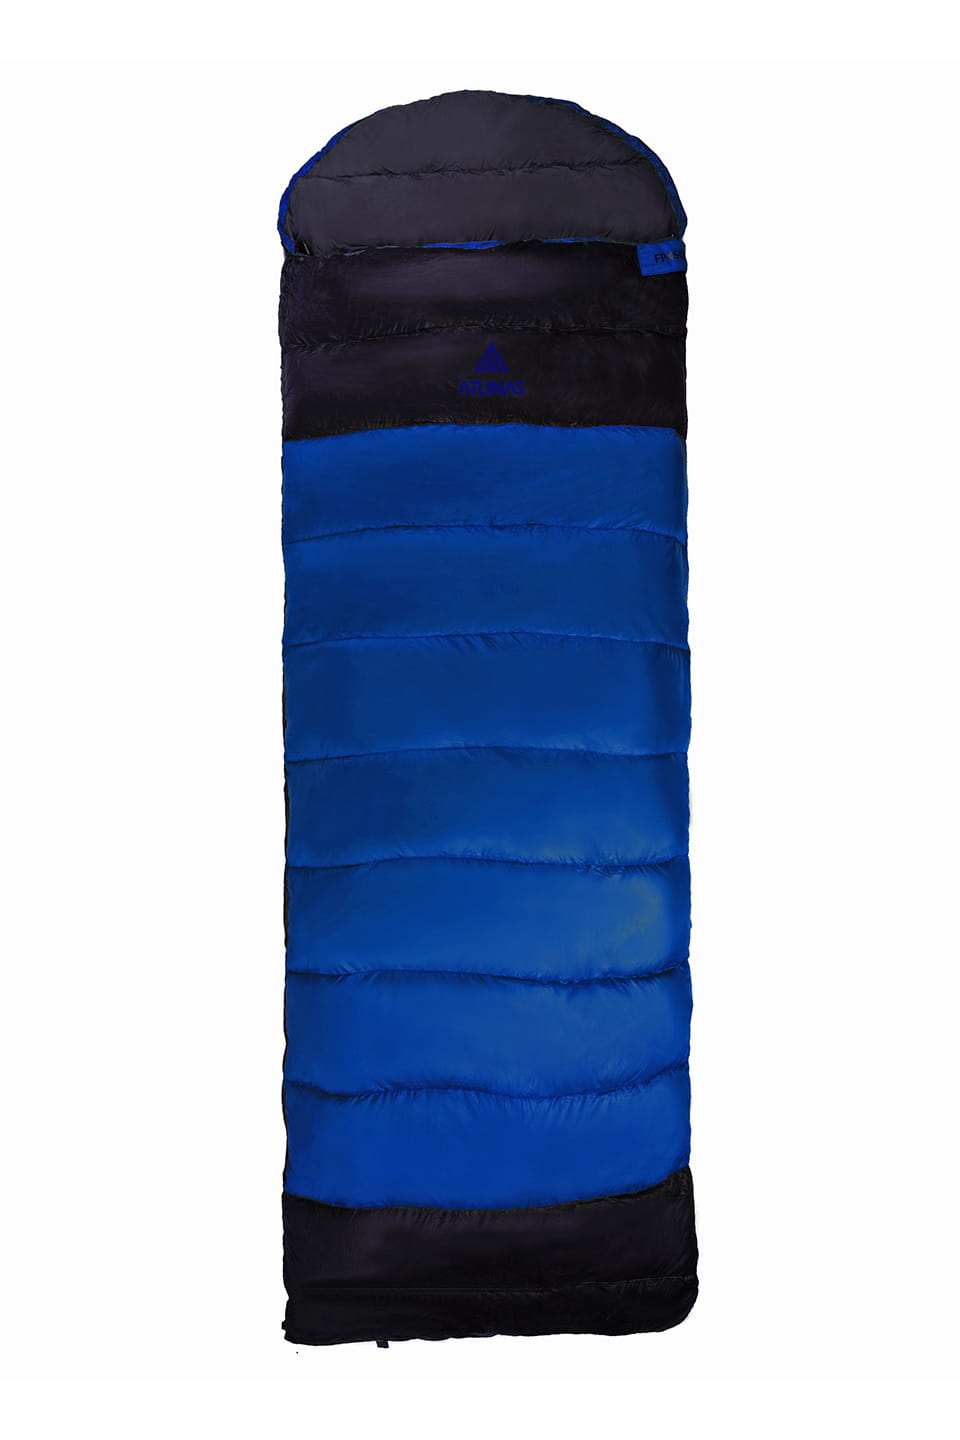 (登山屋)ATUNAS 歐都納350 FIELD經典羽絨睡袋/露營睡袋(A1SBBB02N藍/深灰) 1